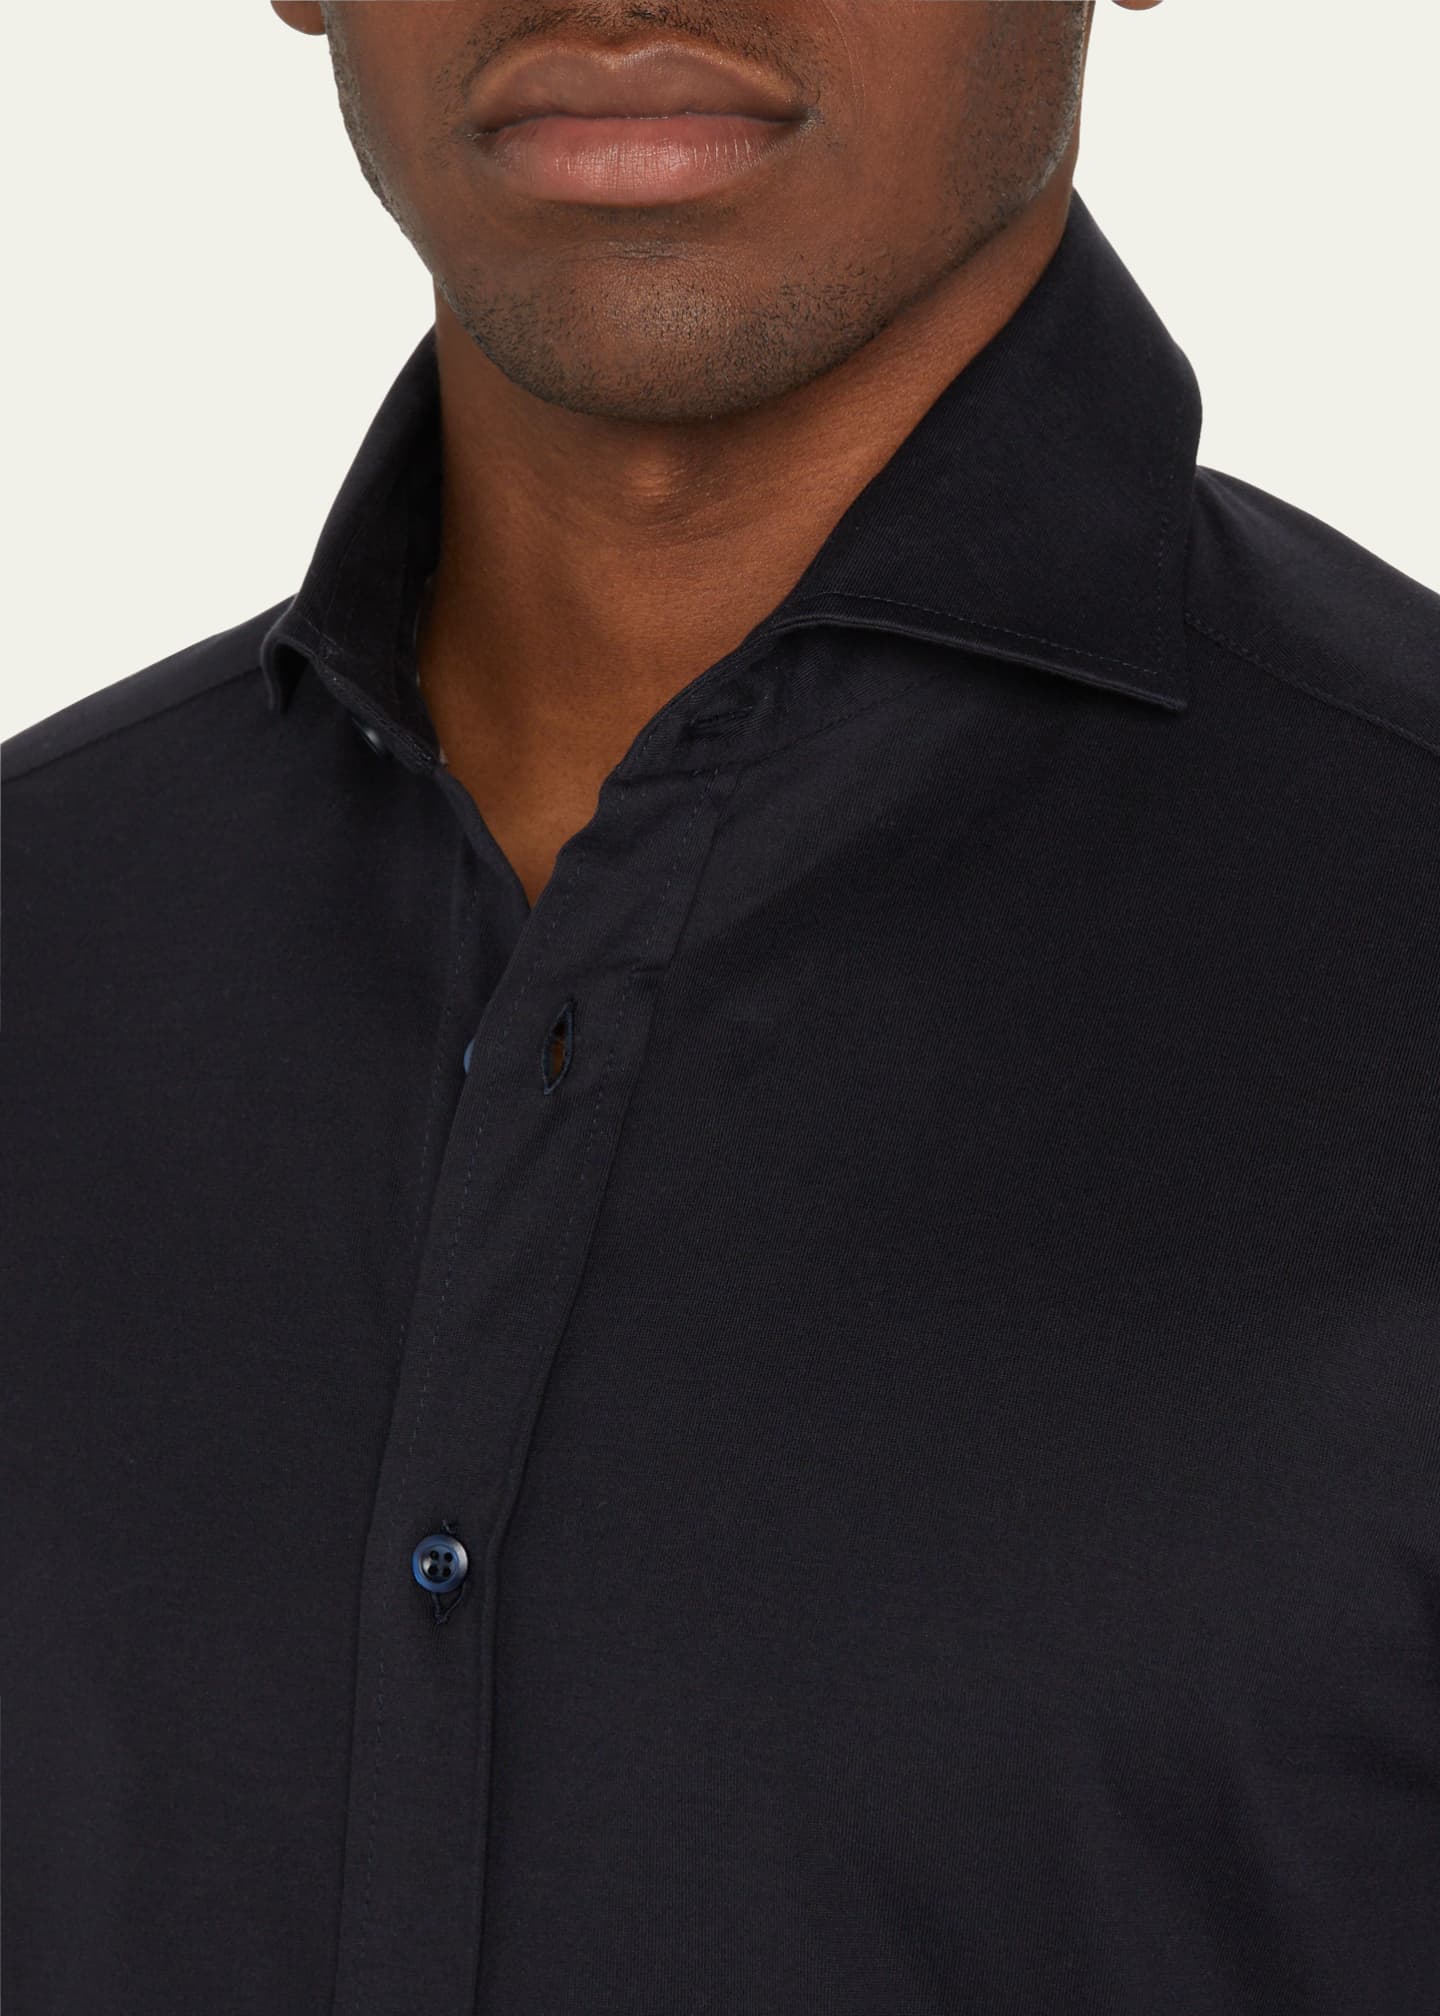 Brunello Cucinelli Men's Jersey Knit Sport Shirt - Bergdorf Goodman